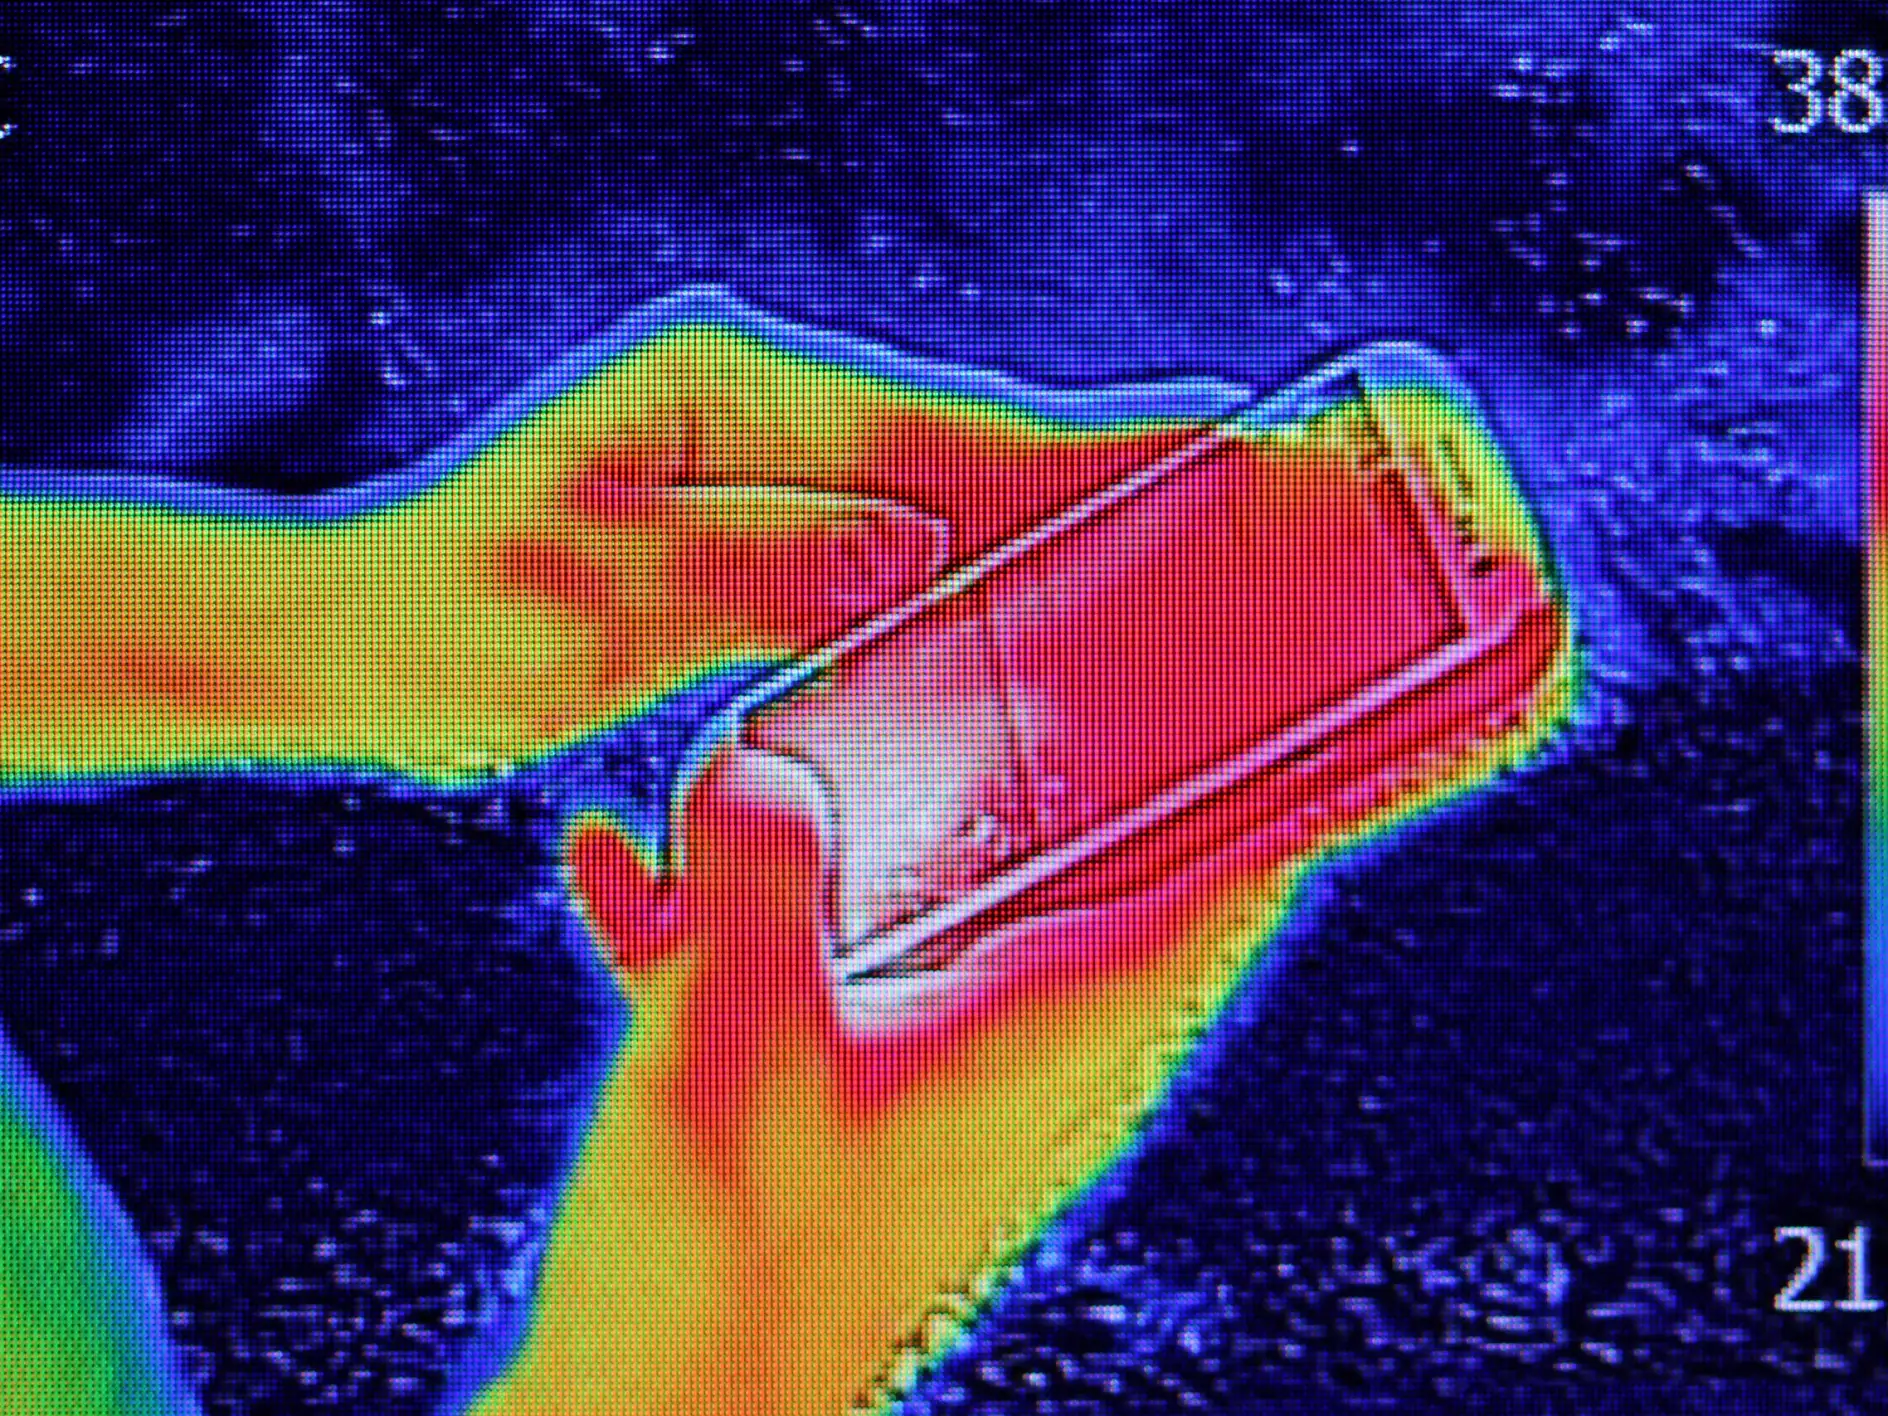 Image de thermographie infrarouge montrant l'émission de chaleur lorsque la jeune fille a utilisé un smartphone ou un téléphone portable